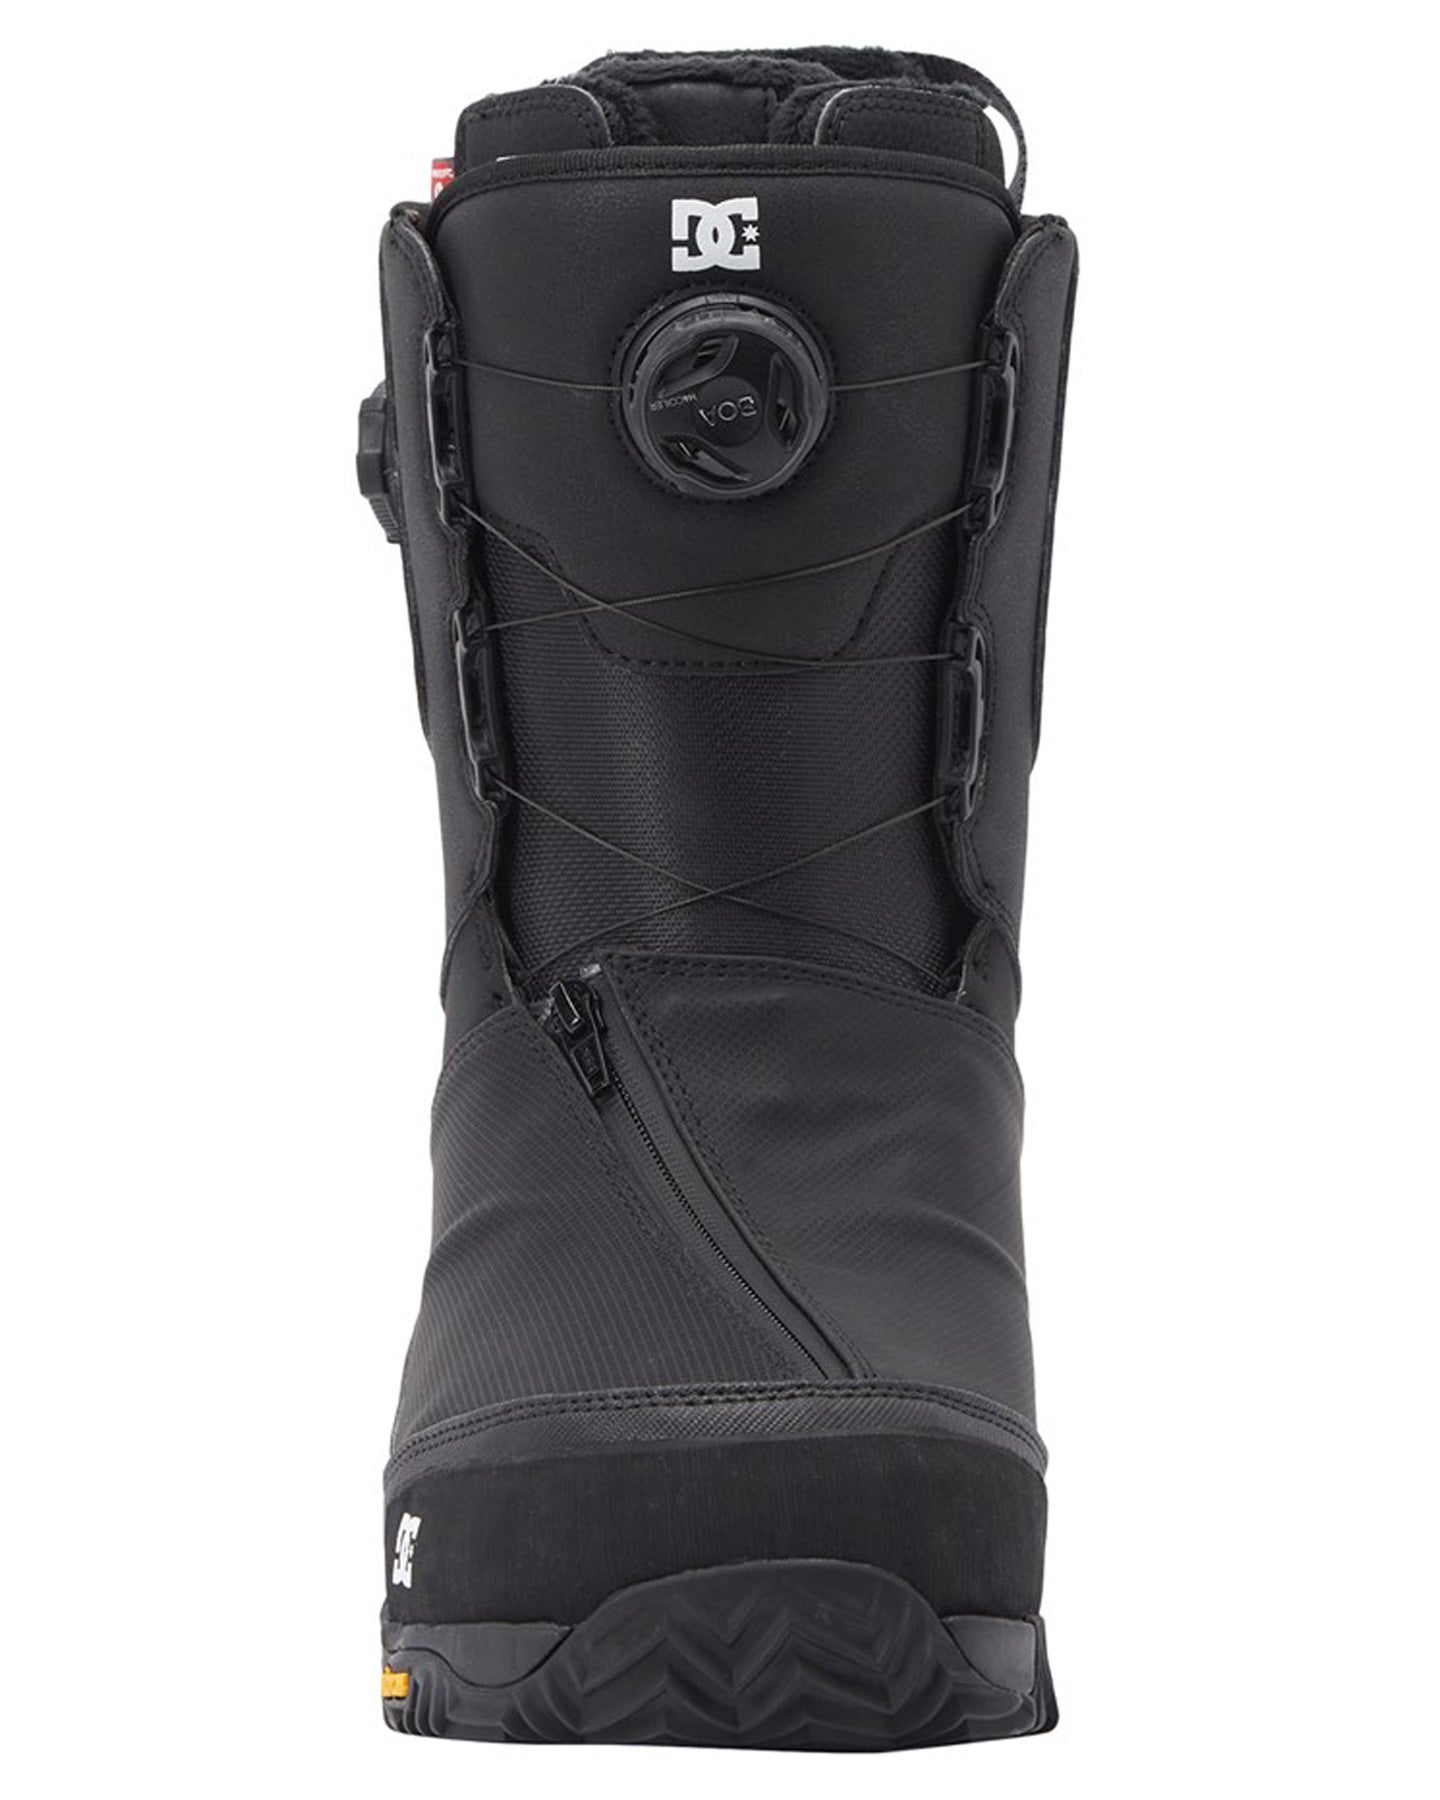 DC Transcend BOA® Snowboard Boots - Black/Black/Black Snowboard Boots - Mens - Trojan Wake Ski Snow